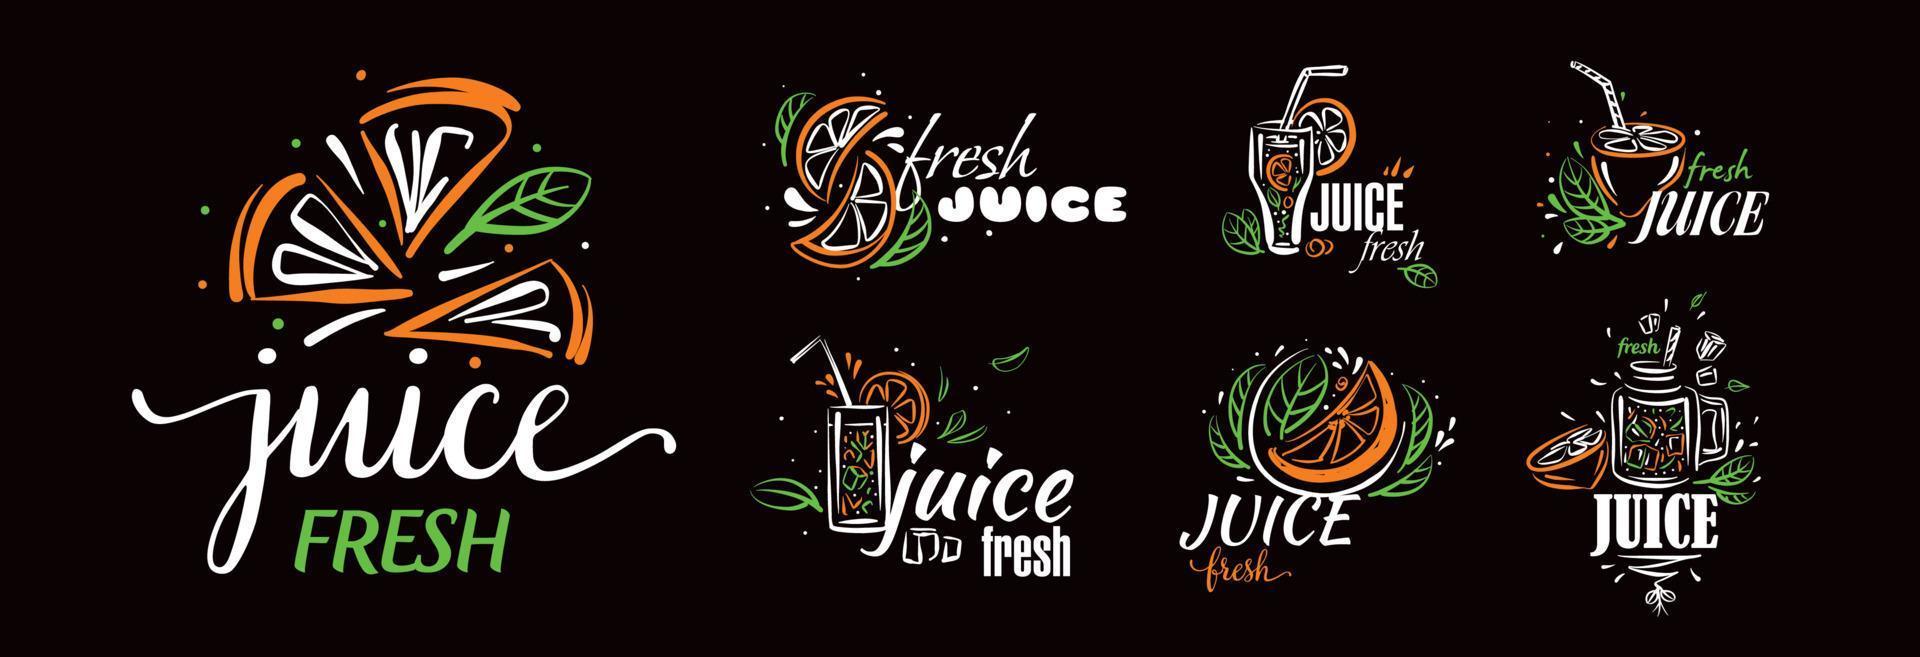 un ensemble de logos vectoriels dessinés de jus de fruits frais sur fond noir vecteur